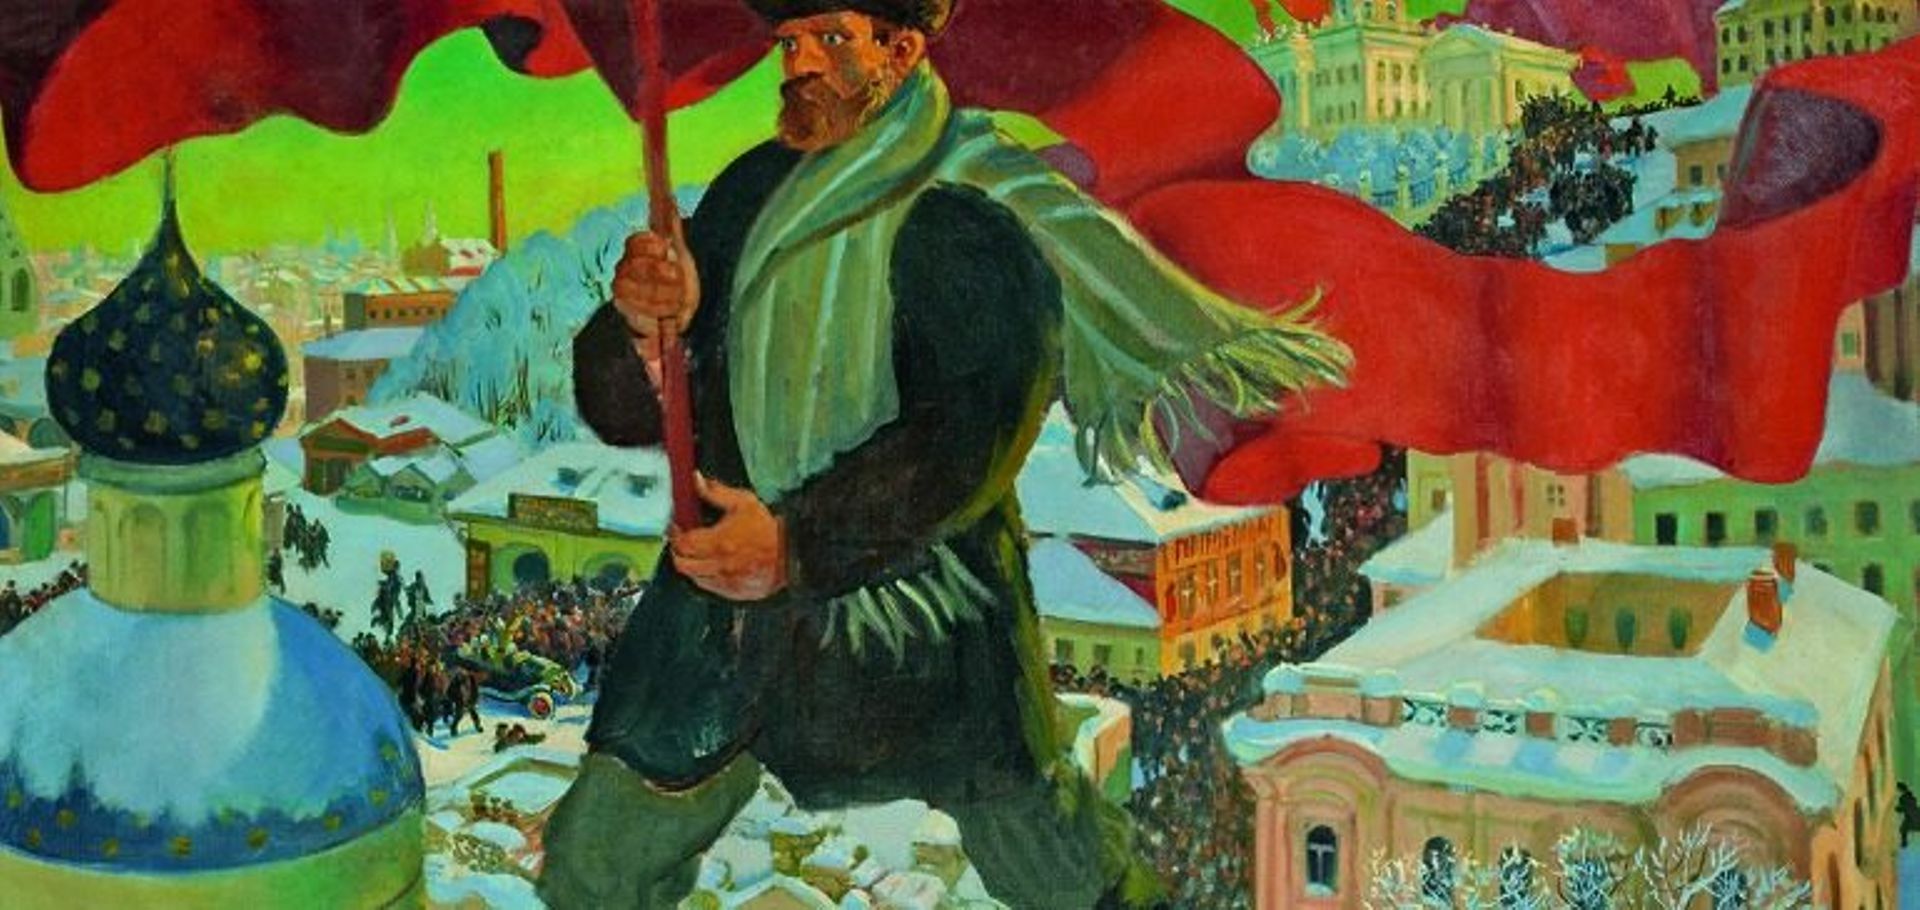 Boris Mikhailovich Kustodiev, "Bolshevik", 1920